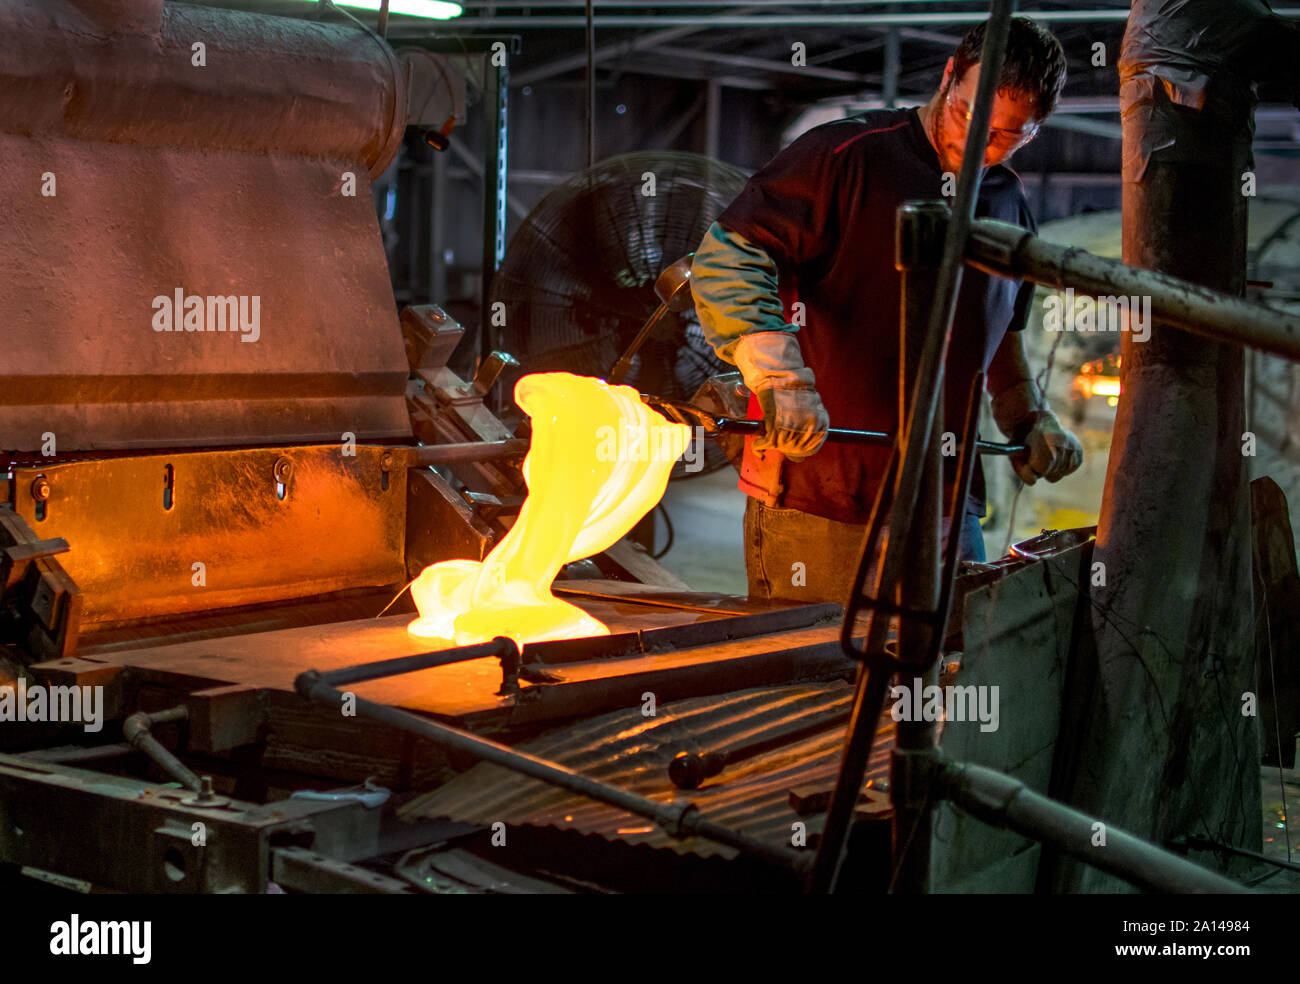 Sept 27 2019 Kokomo Indiana USA; ein talentierter Glas Arbeiter mischt geschmolzenen Glas, und in diesem Prozess, erstellt Blätter der schönen Glasmalereien für Ar Stockfoto